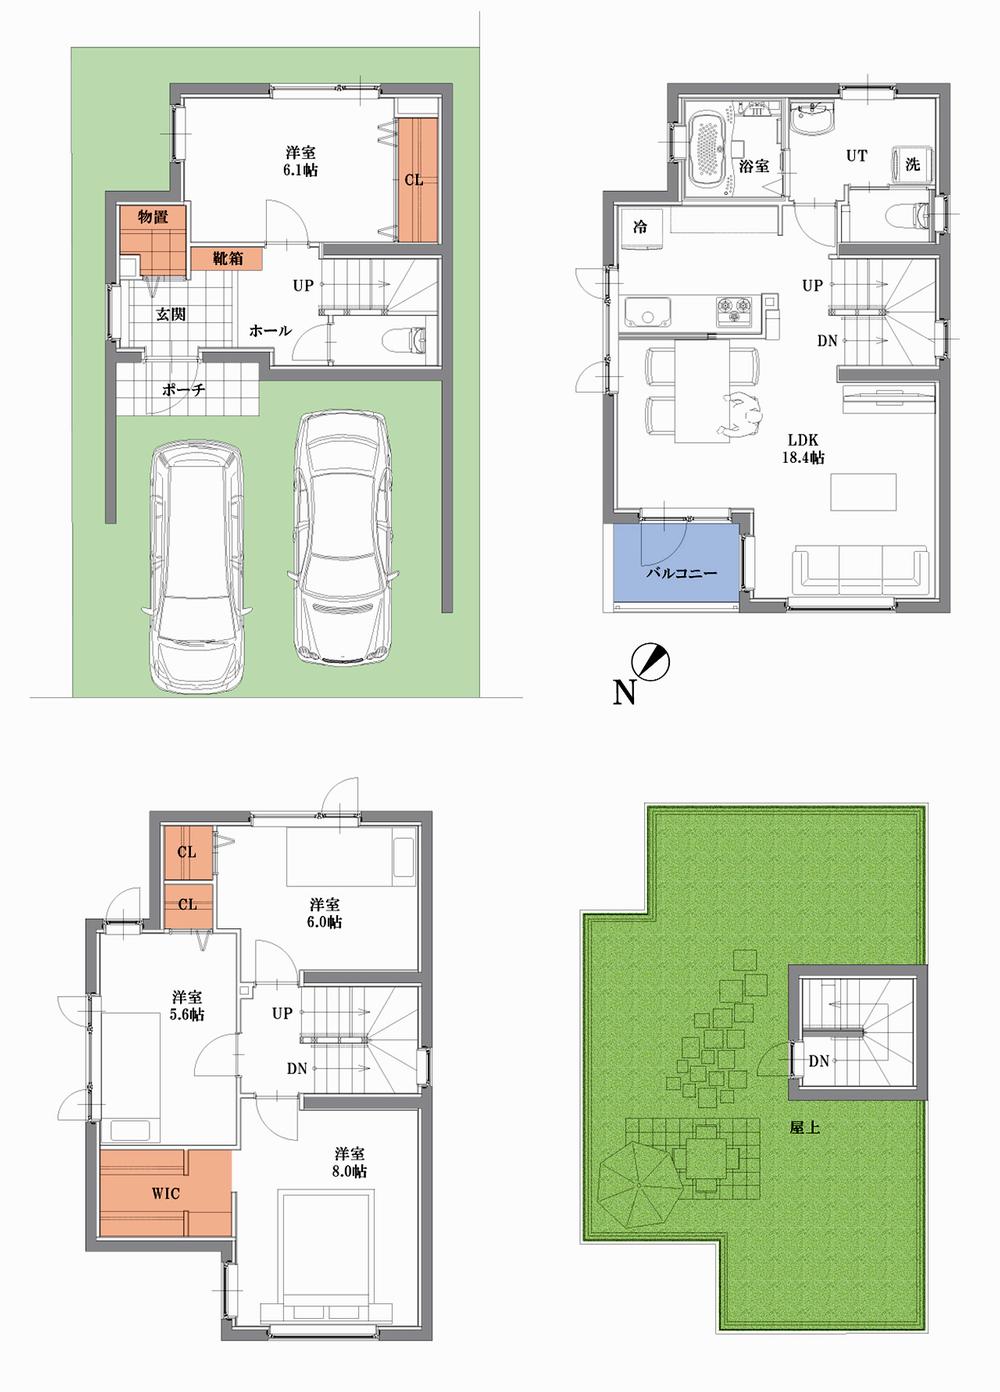 Floor plan. (A Building), Price 29,800,000 yen, 4LDK, Land area 74.62 sq m , Building area 118.84 sq m